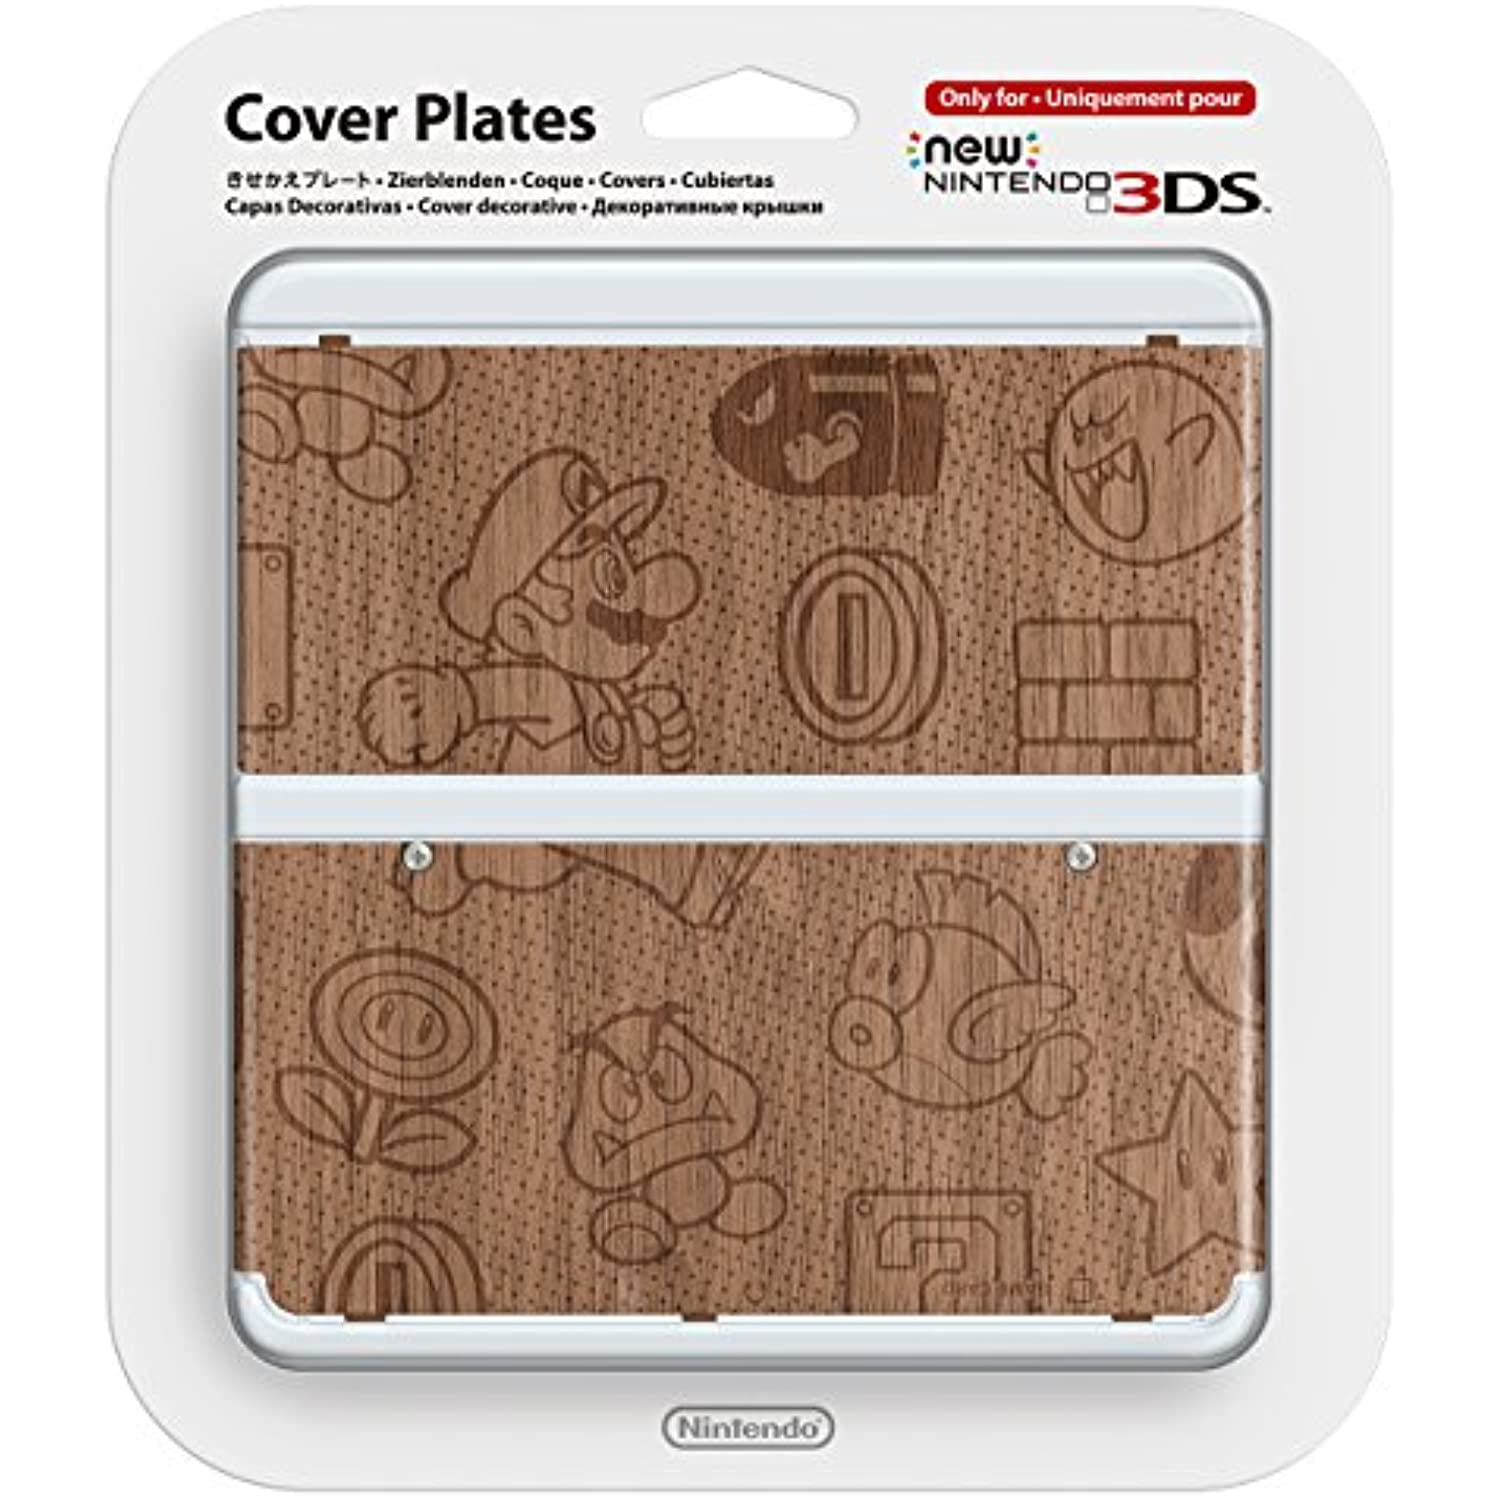 Pointer Bourgogne international New Nintendo 3Ds Cover Plates No.024 (Grain) [Nintendo 3Ds] - Walmart.com